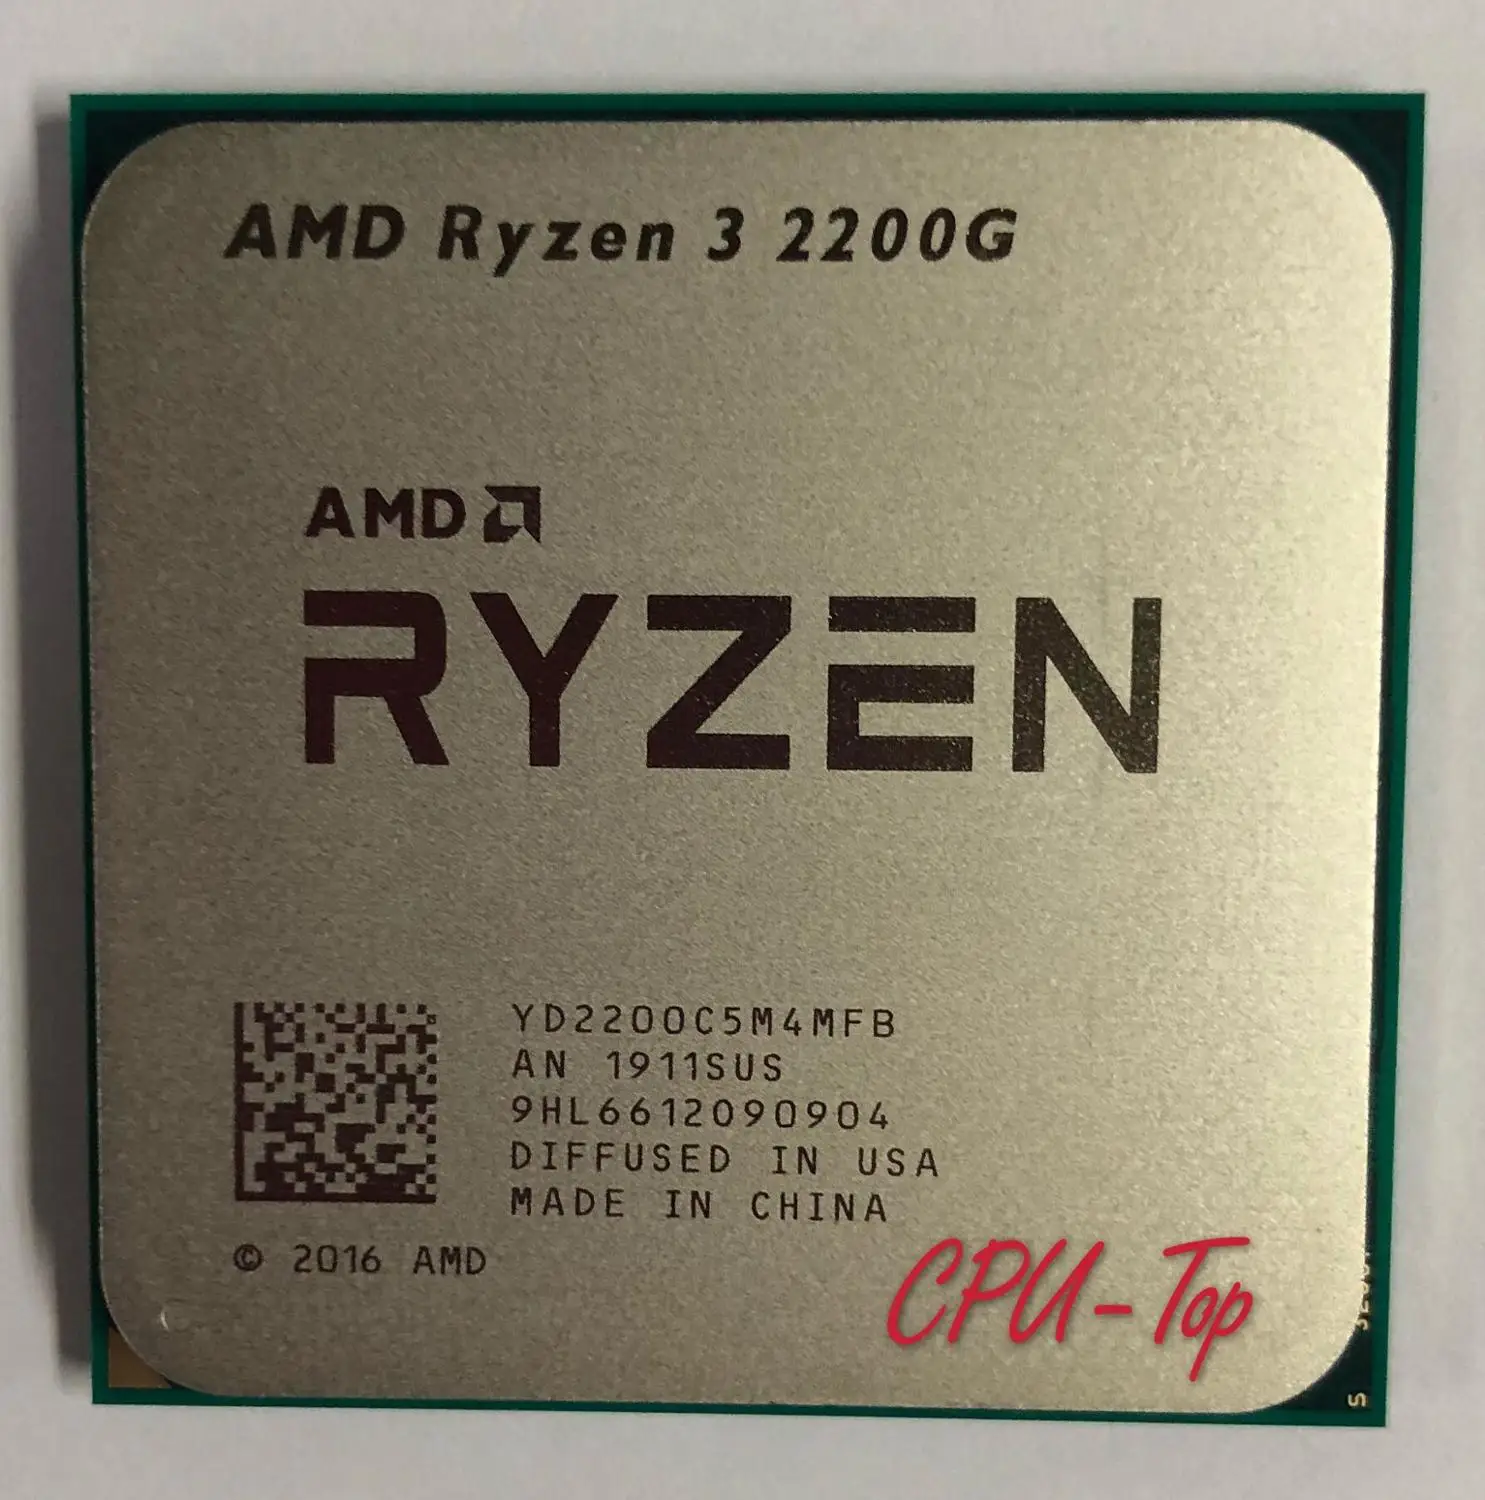 AMD Ryzen 3 2200G R3 2200G 3.5 GHz Quad Core Quad Thread CPU Processor YD2200C5M4MFB Socket AM4|CPUs| - AliExpress